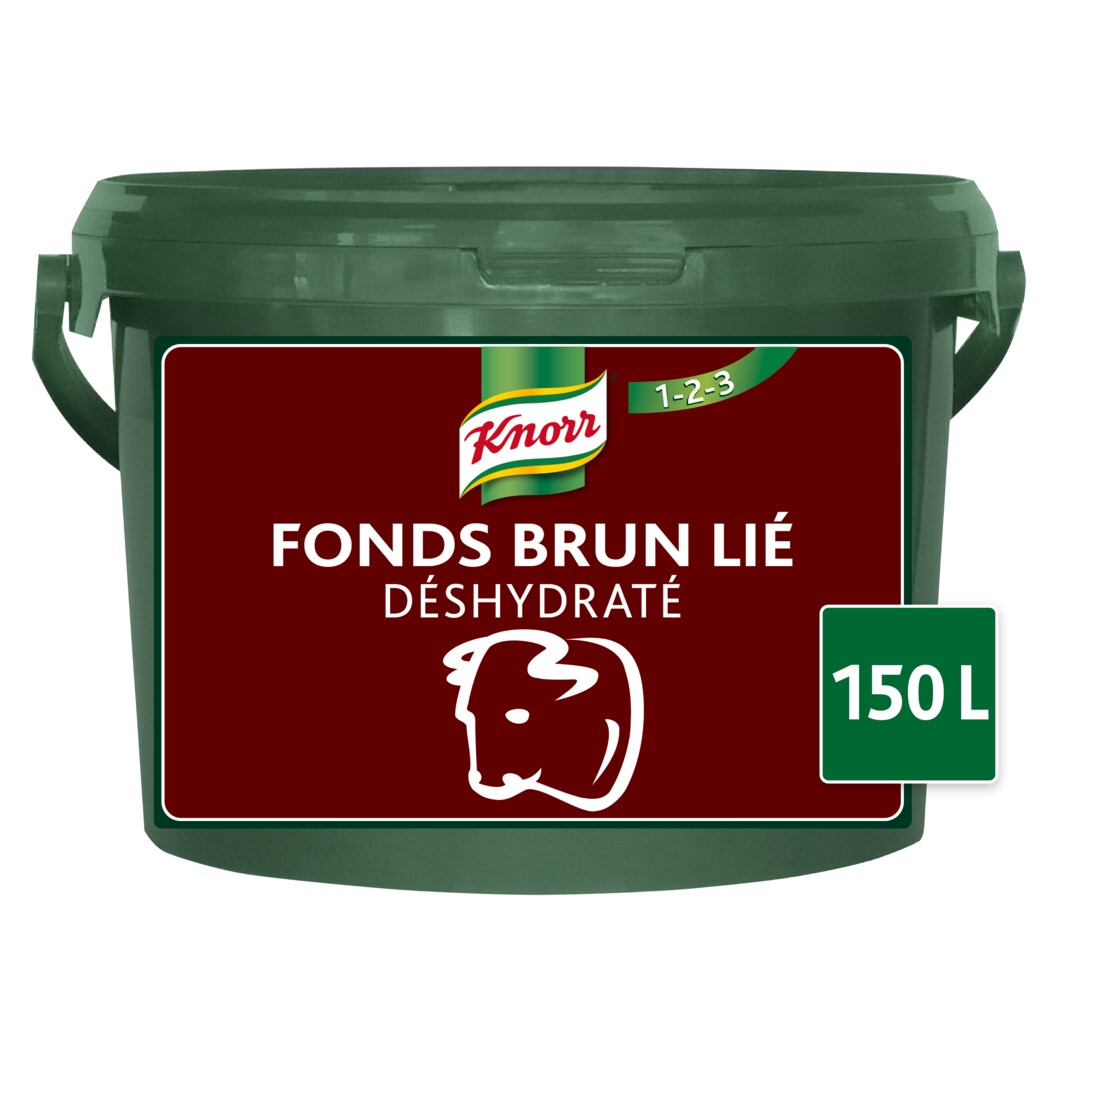 Knorr 123 Fonds Brun Lié déshydraté Seau 3kg jusqu'à 150L - 